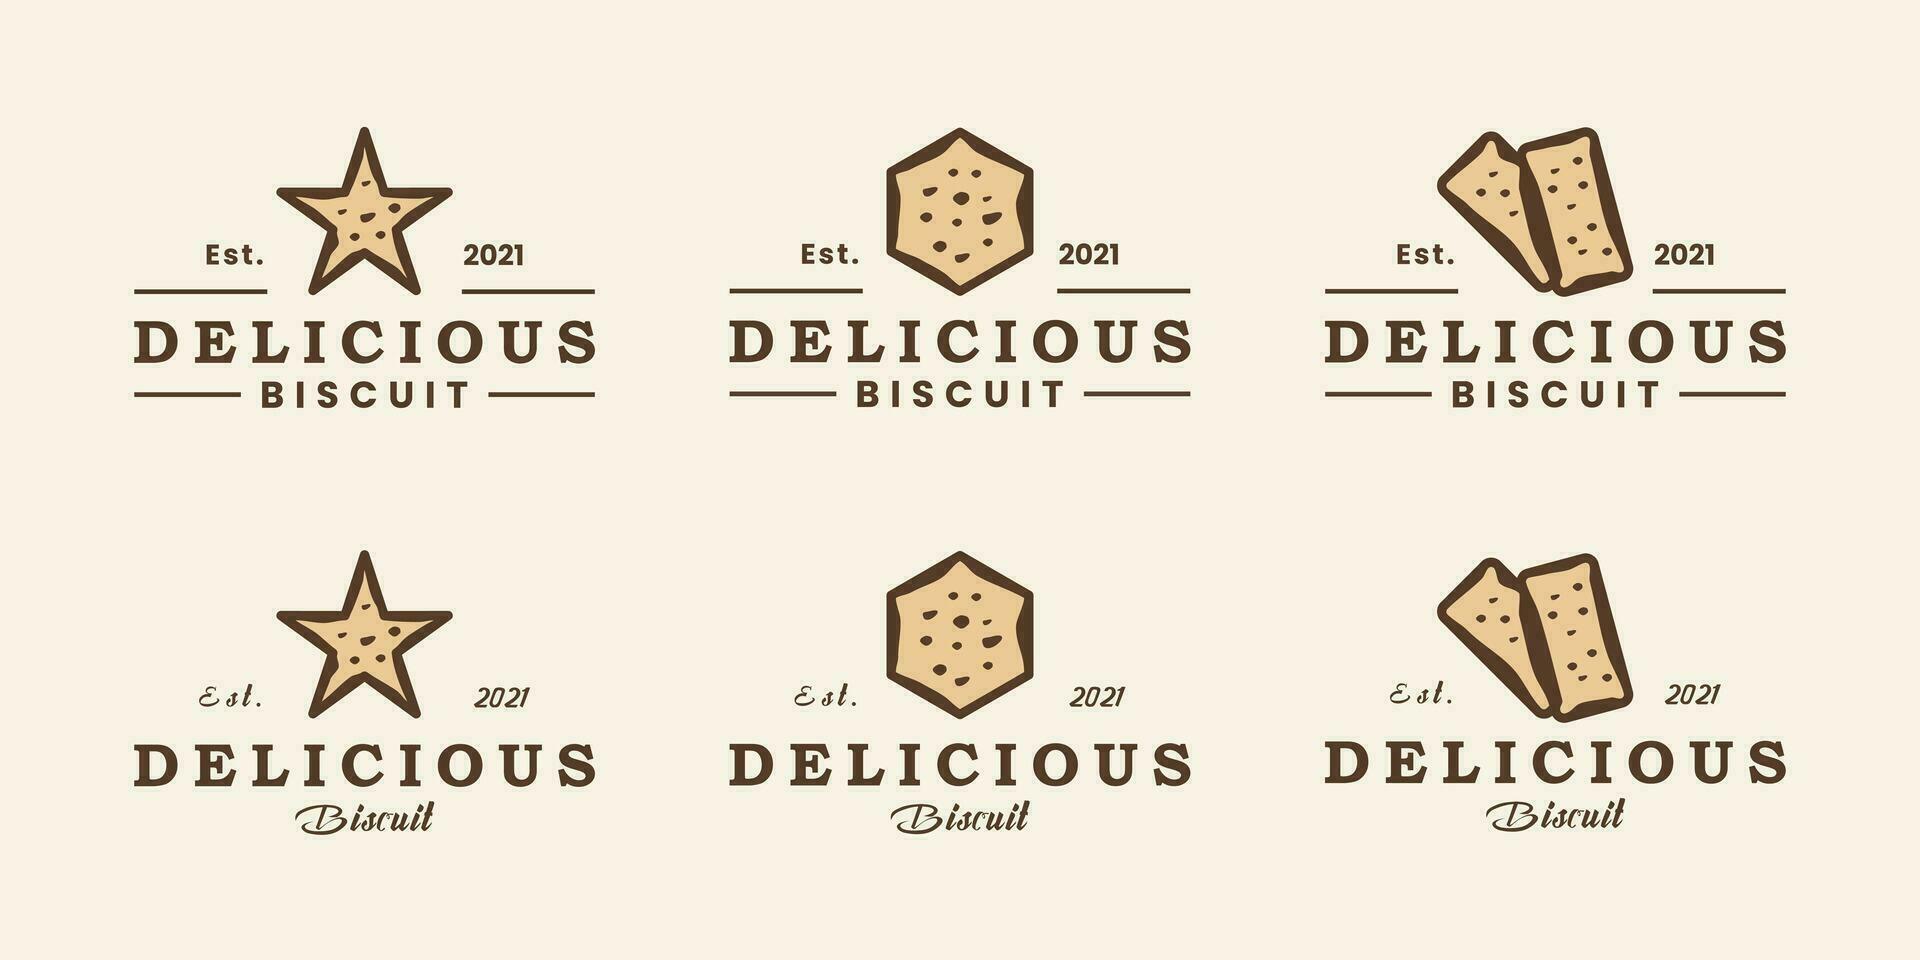 conjunto de delicioso galleta logo diseño insignia, retro estilo minimalista Clásico vector